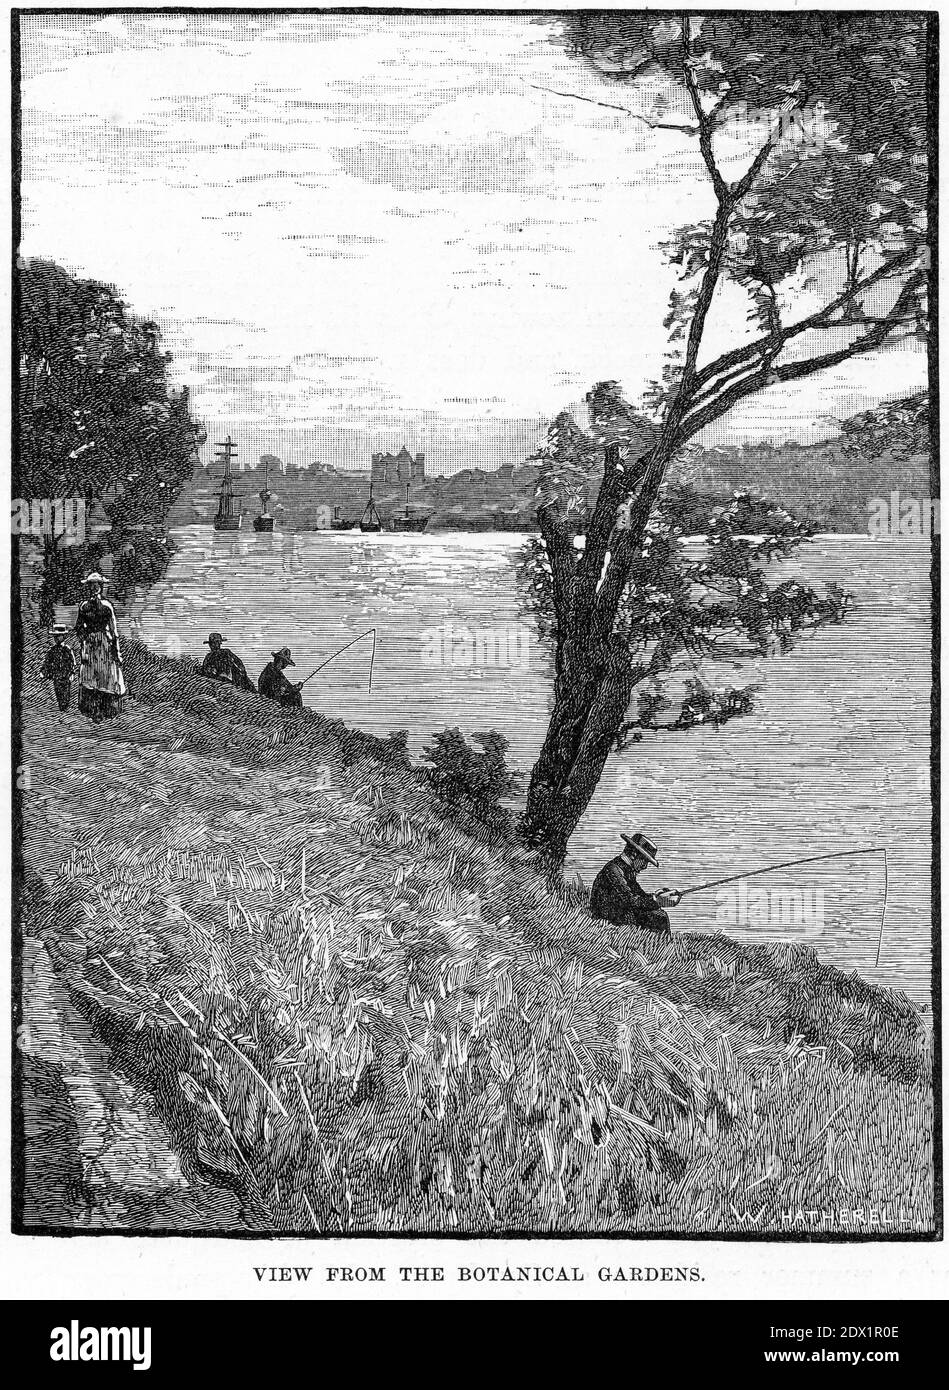 Gravure d'une vue depuis le jardin botanique de Melbourne, Australie, vers 1890 Banque D'Images